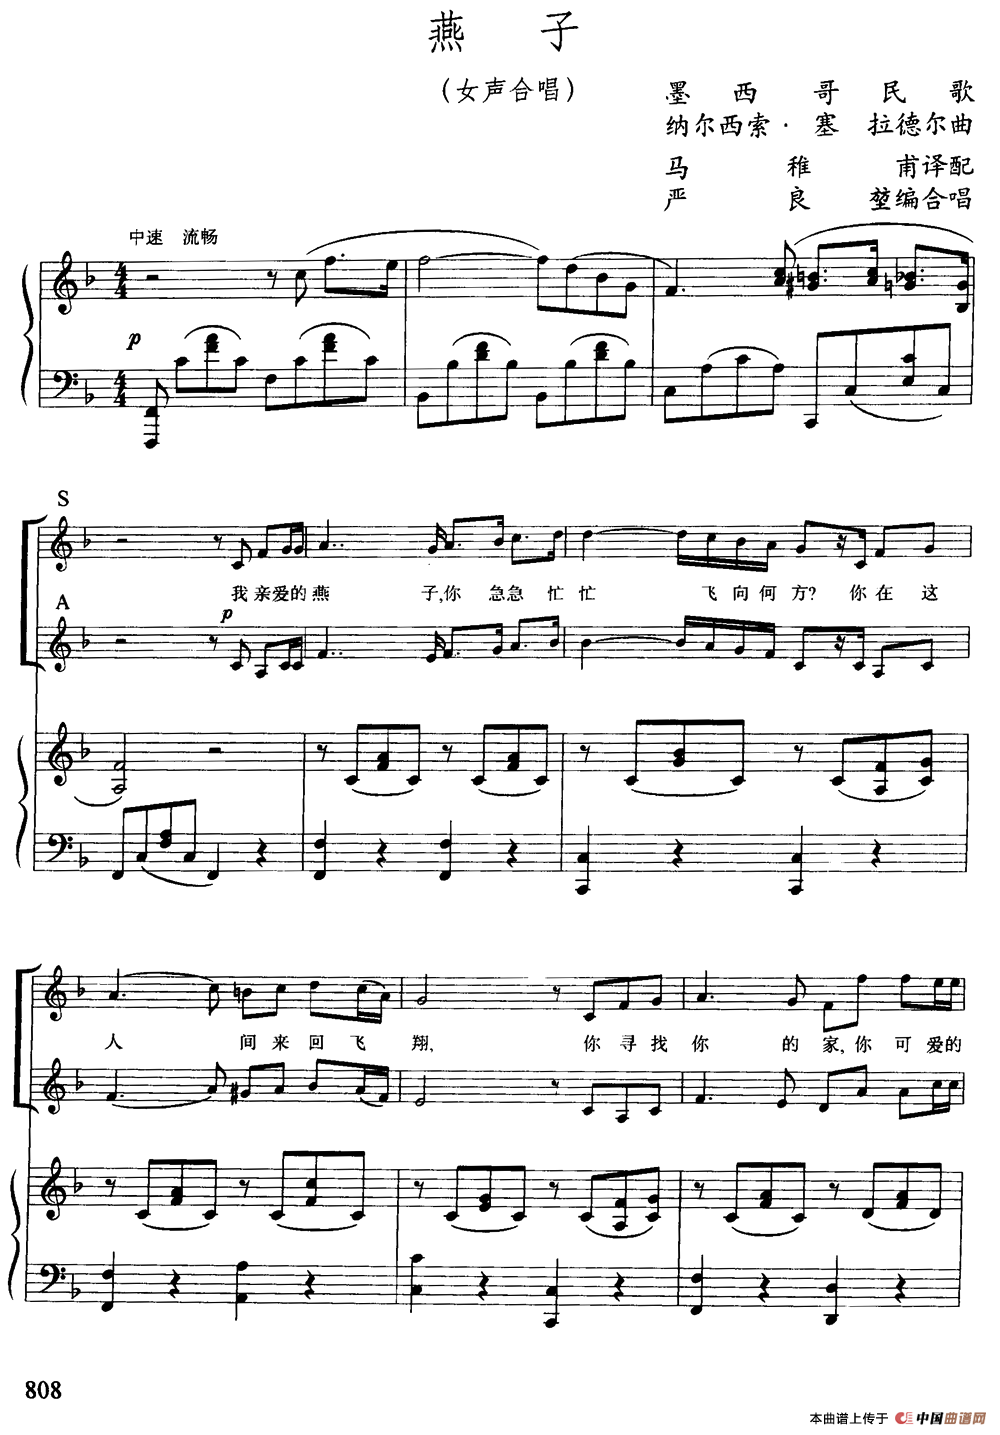 燕子钢琴谱(女声合唱,正谱)